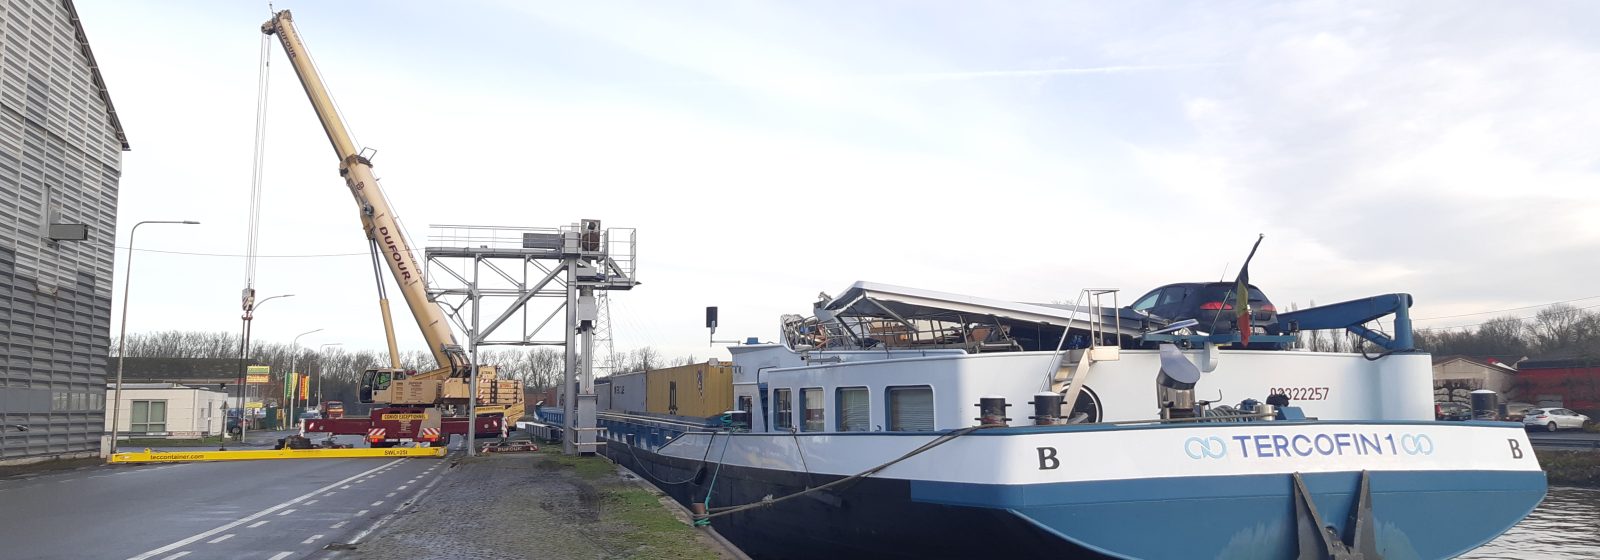 De 'Tercofin I' ligt met zijn zwaar beschadigde brug langs de kade in Doornik